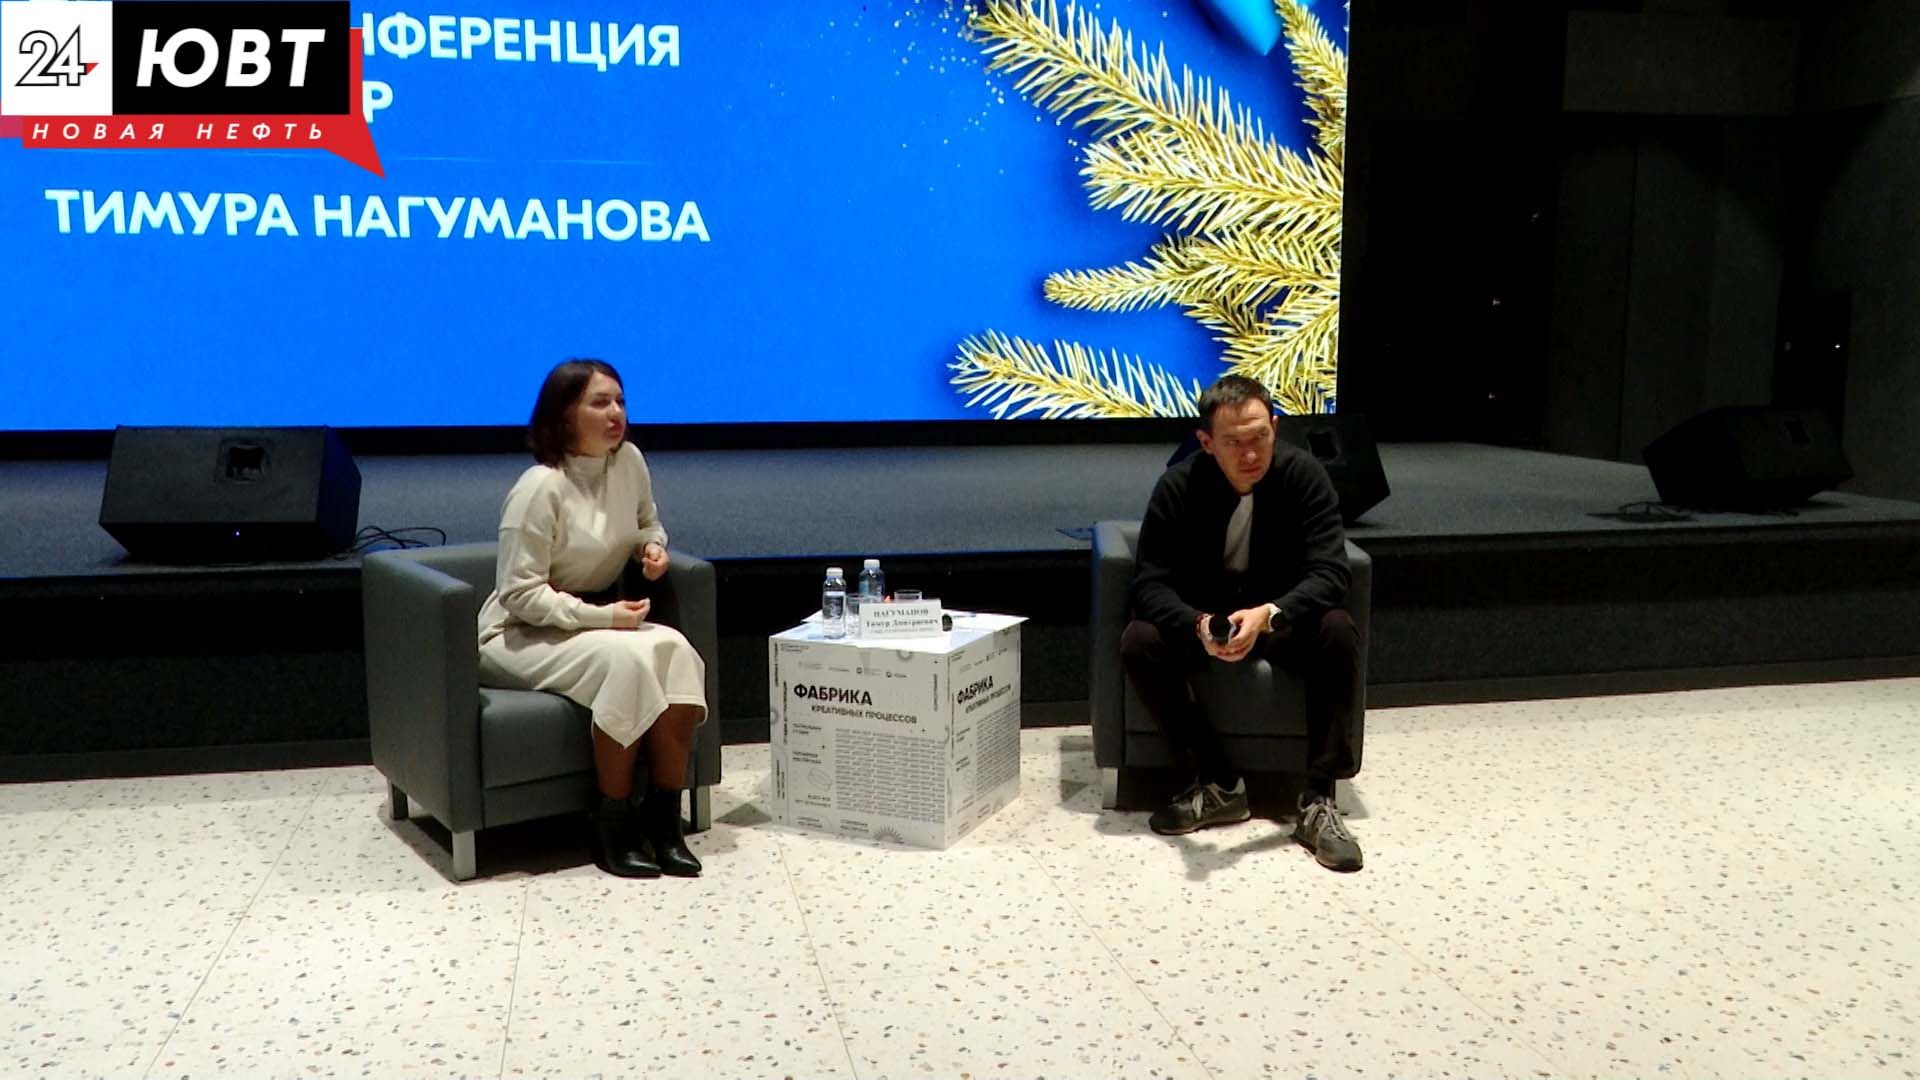 Пресс-конференция главы района Тимура Нагуманова прошла в новом формате